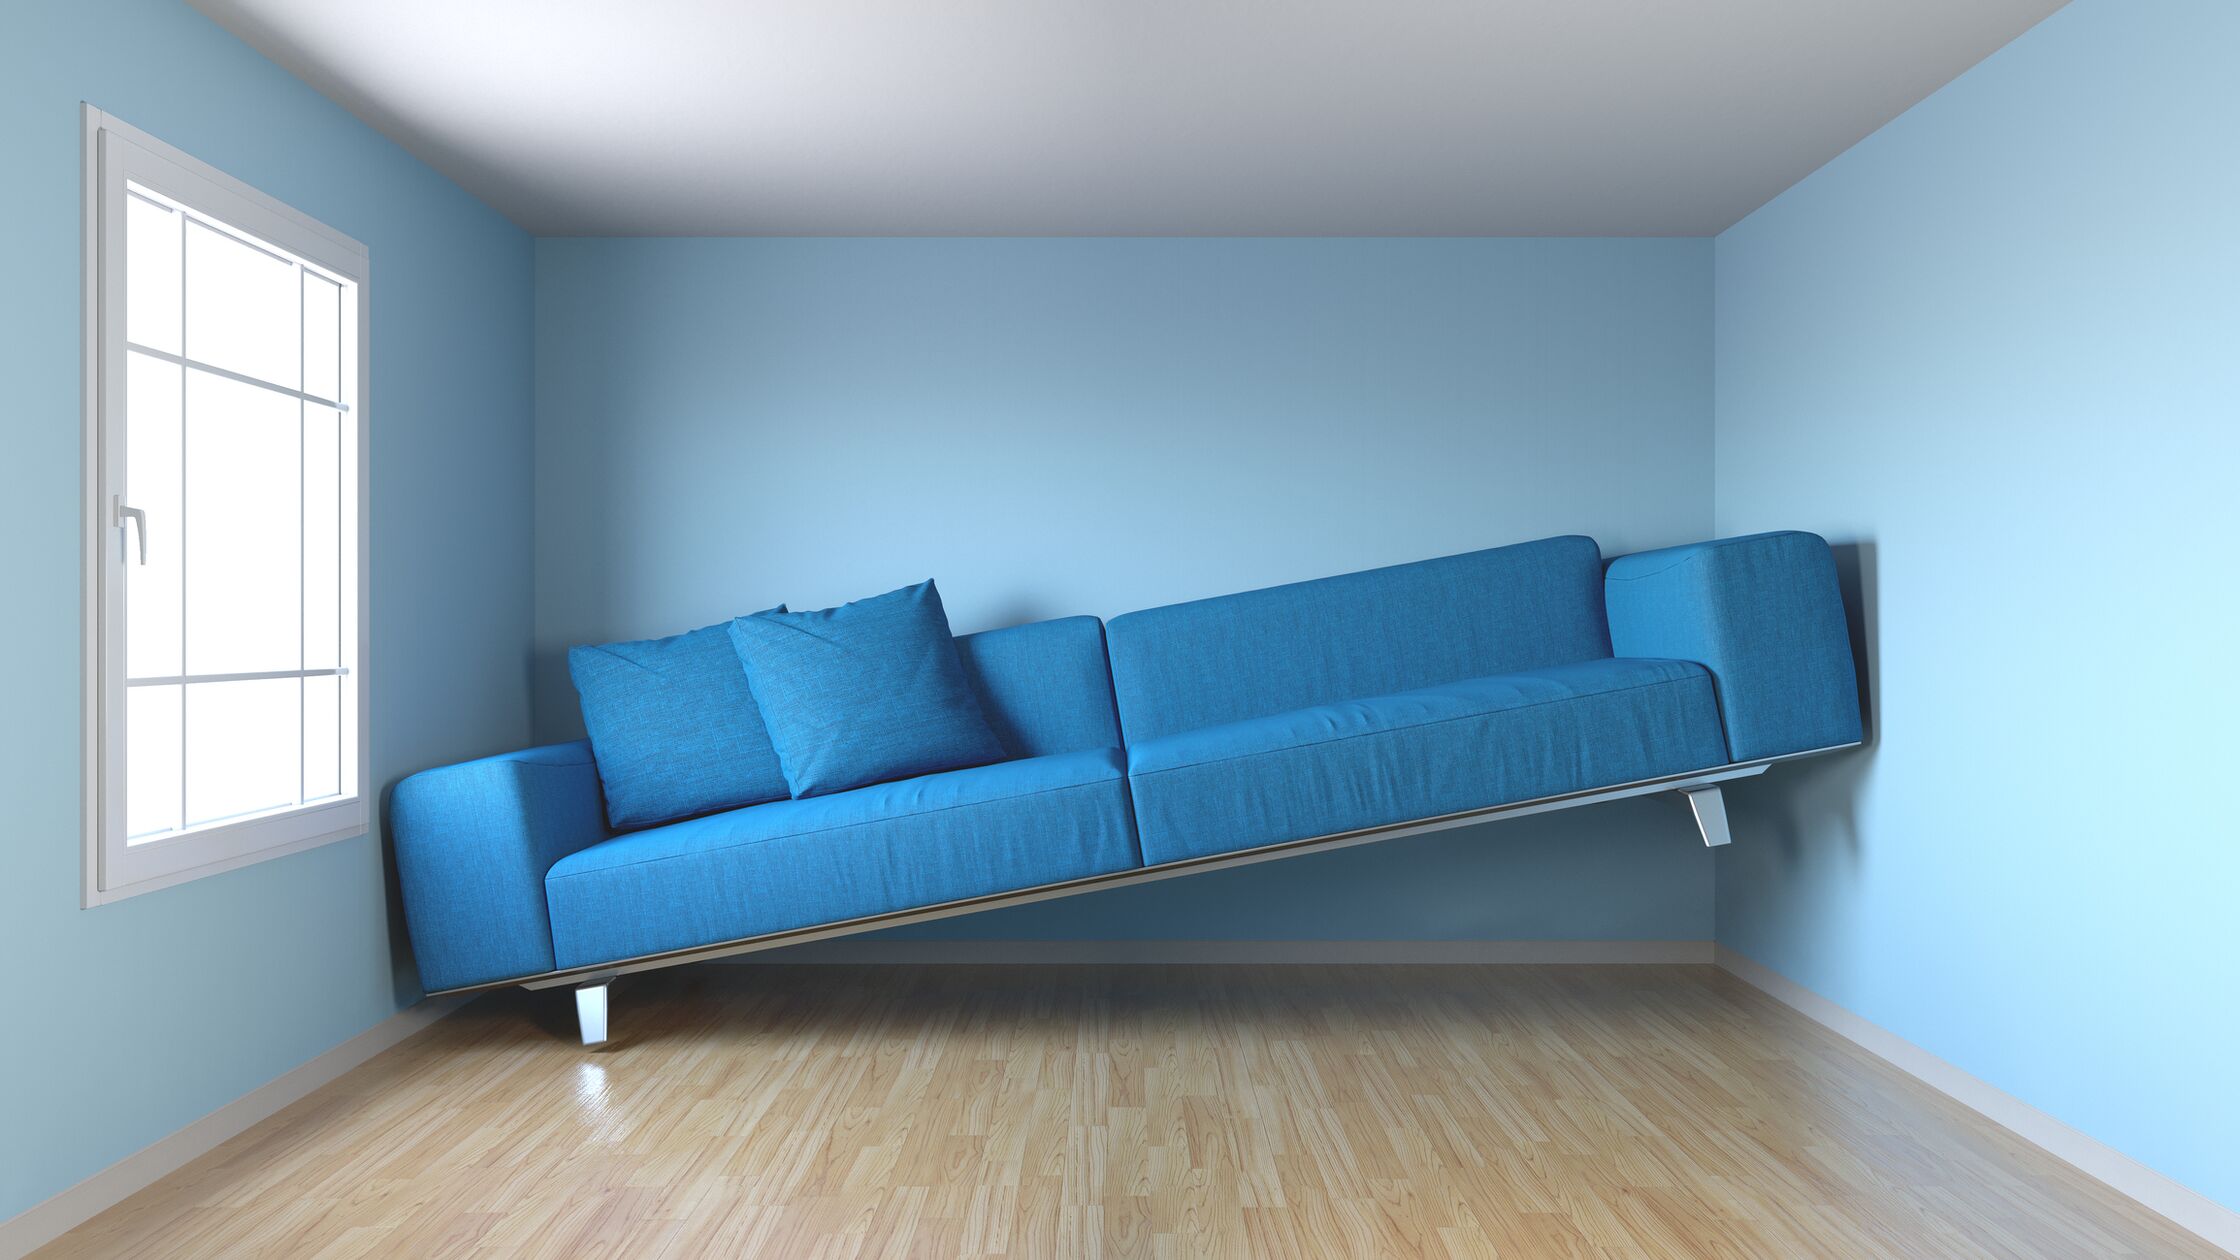 Ein blaues Sofa klemmt mit dem rechten Ende an der Wand, weil es nicht in den Raum passt